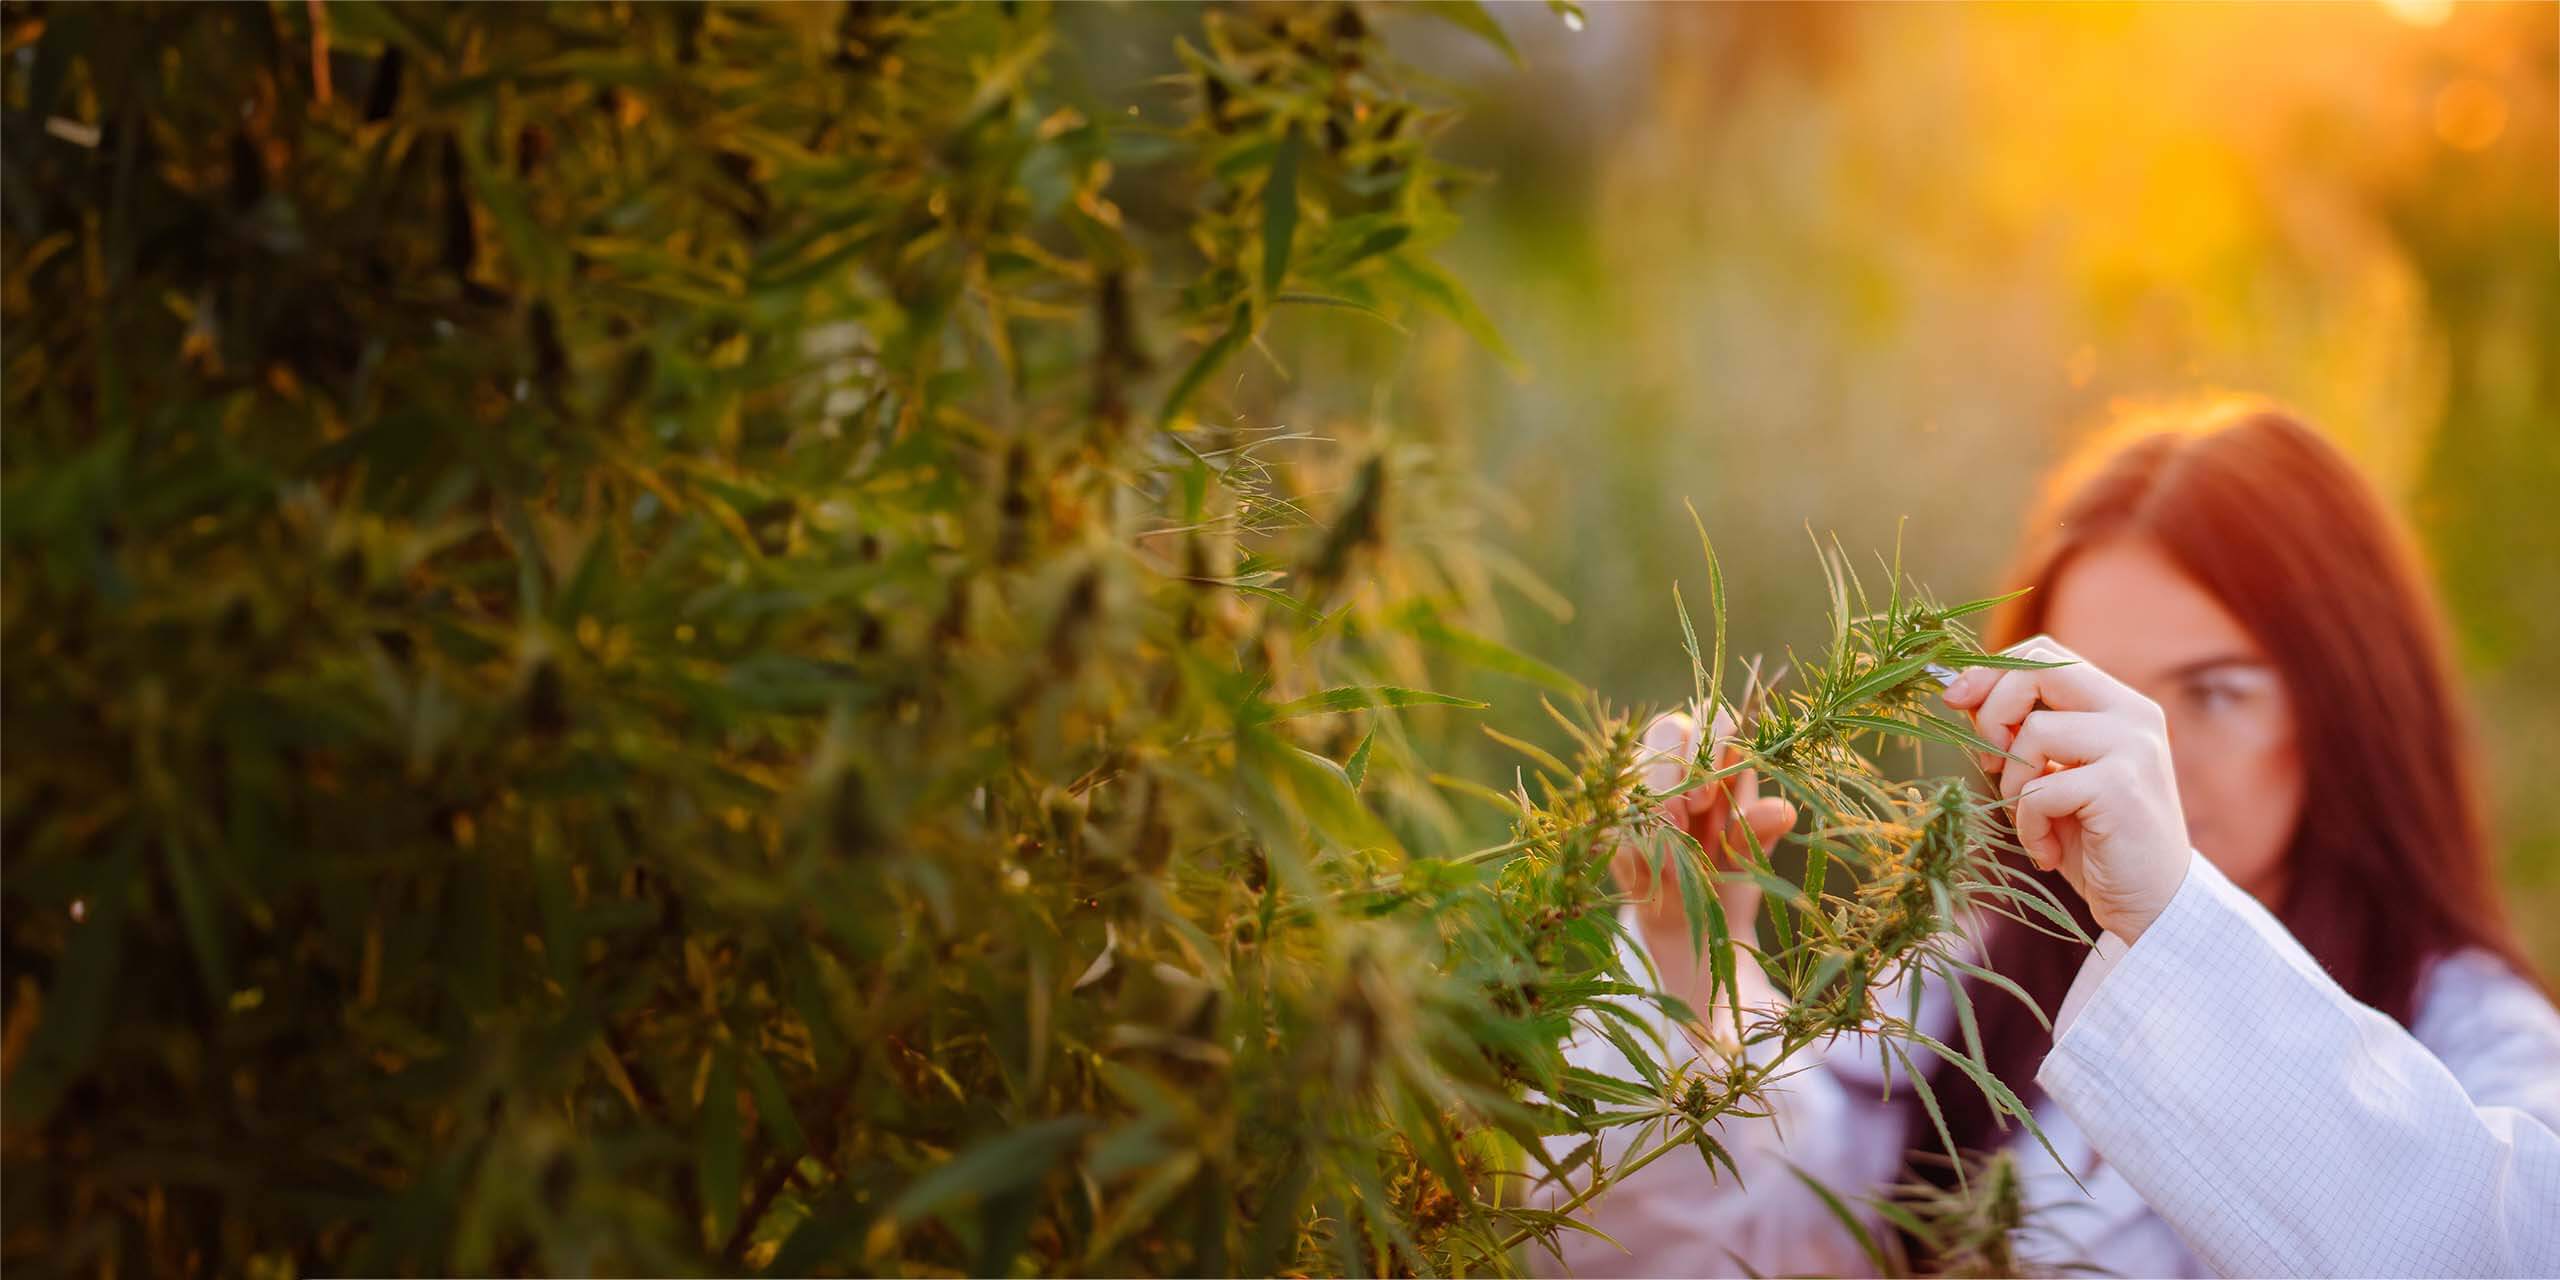 Eine Frau mit roten Haaren untersucht bei Sonnenuntergang Cannabispflanzen auf einem Feld und konzentriert sich dabei aufmerksam auf die Blätter.